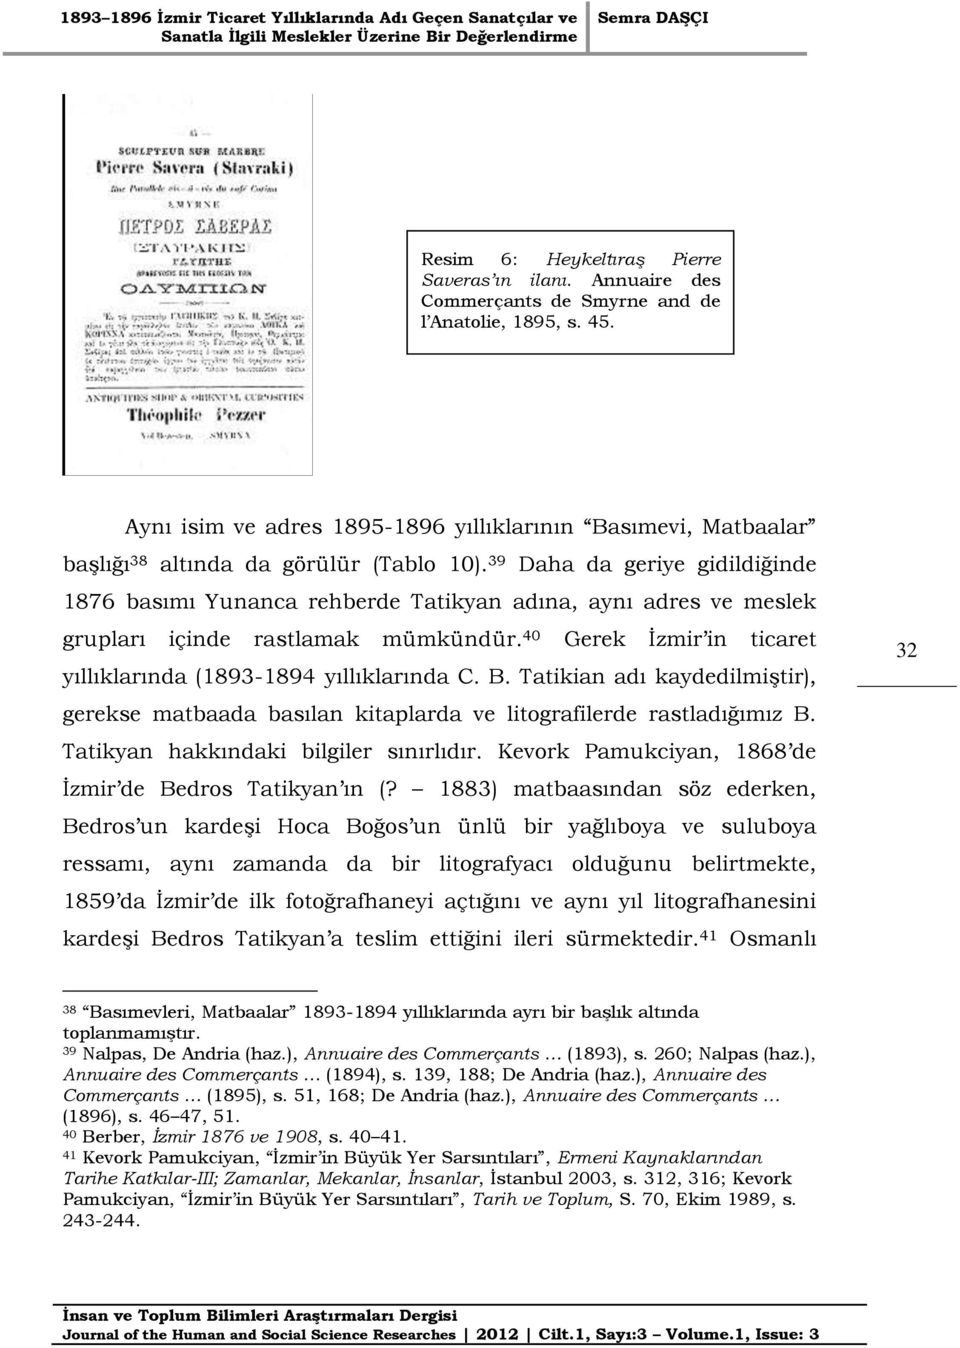 39 Daha da geriye gidildiğinde 1876 basımı Yunanca rehberde Tatikyan adına, aynı adres ve meslek grupları içinde rastlamak mümkündür.